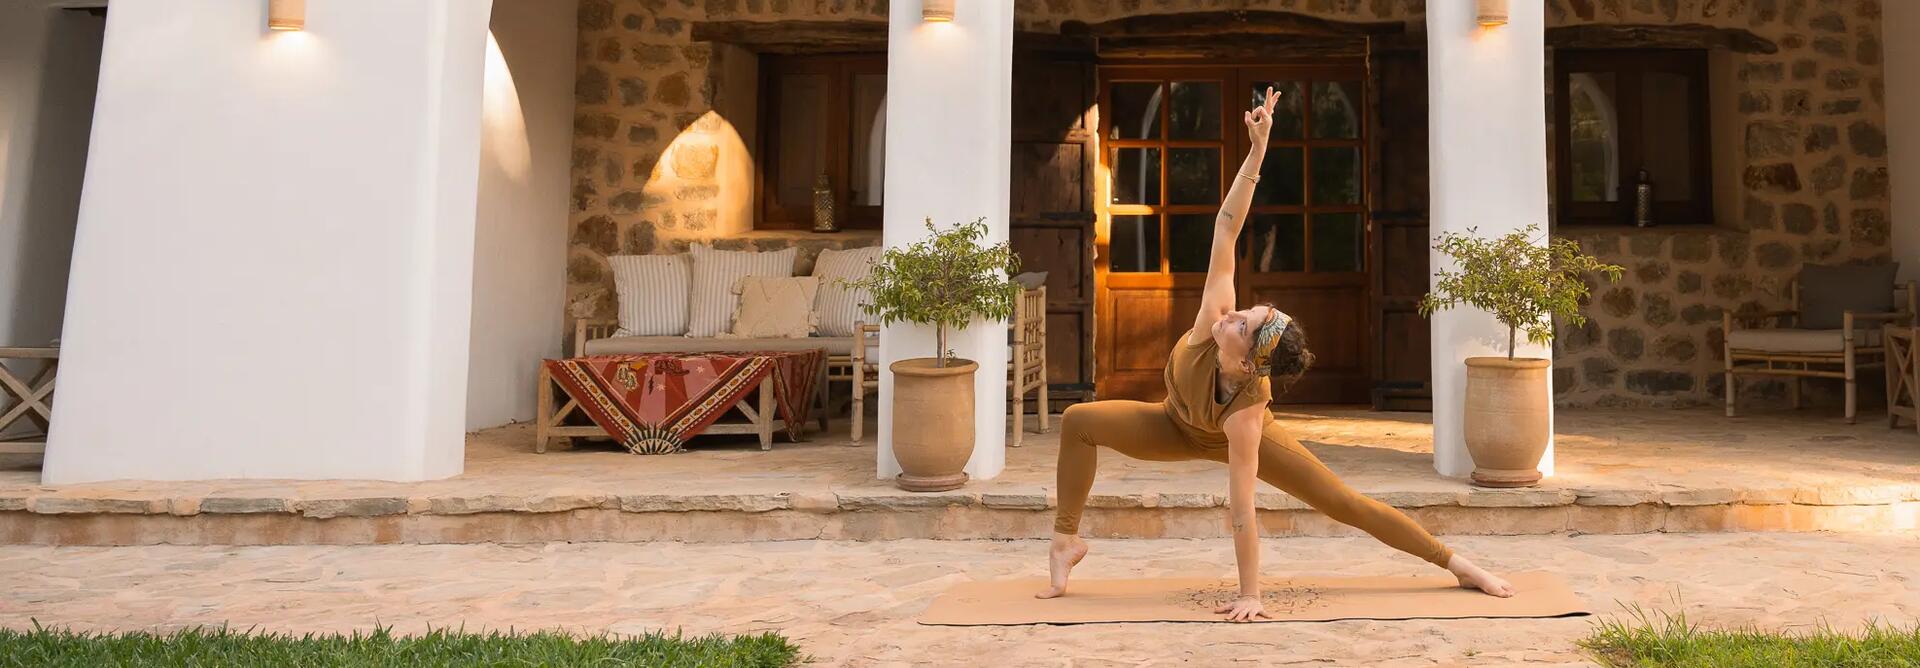 Posturas de yoga: descubre sus nombres y posiciones | Decathlon